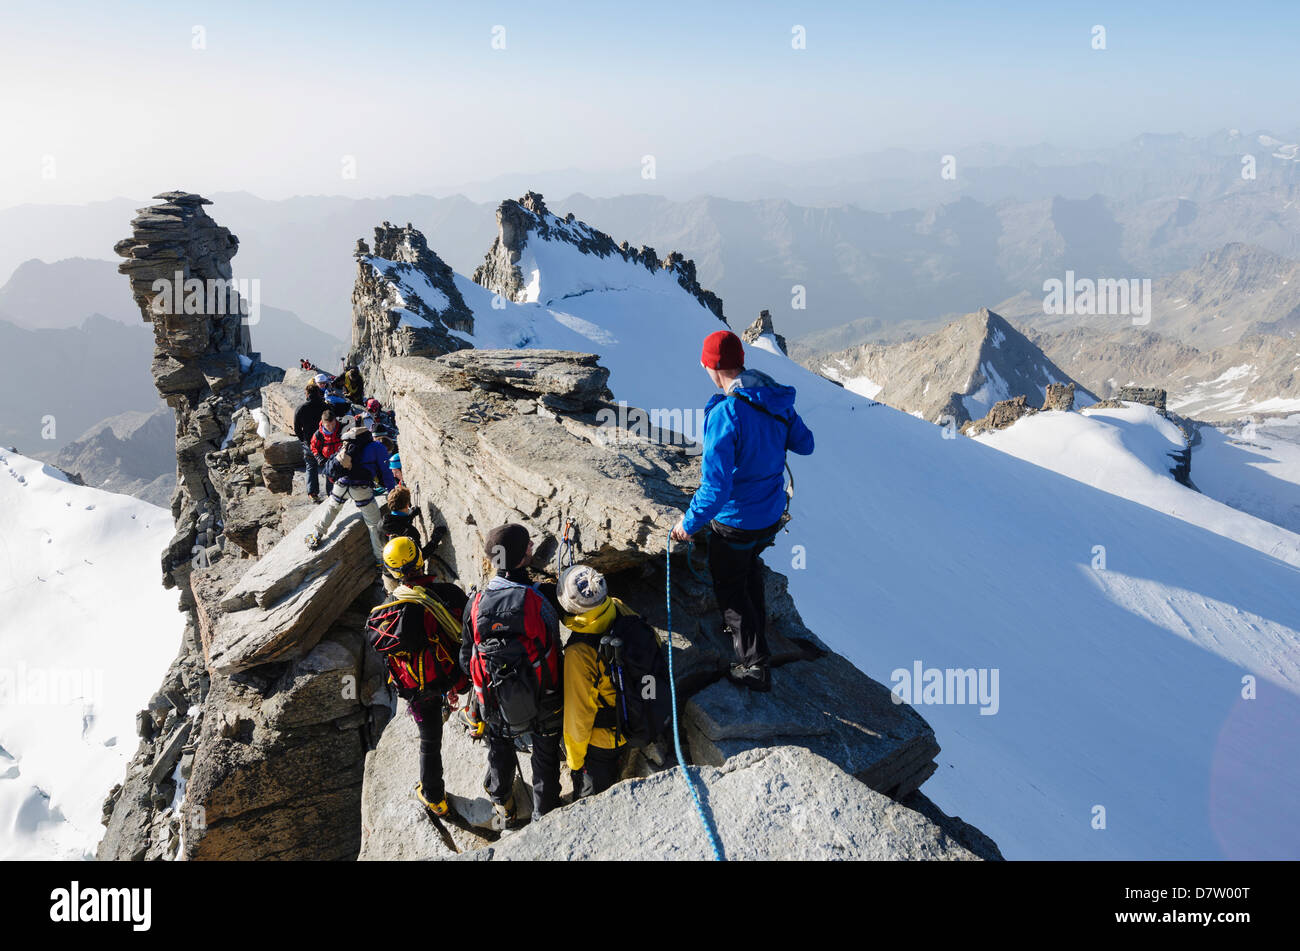 Gran Paradiso, 4061m, highest peak entirely in Italy, Gran Paradiso National Park, Aosta Valley, Italian Alps, Italy Stock Photo